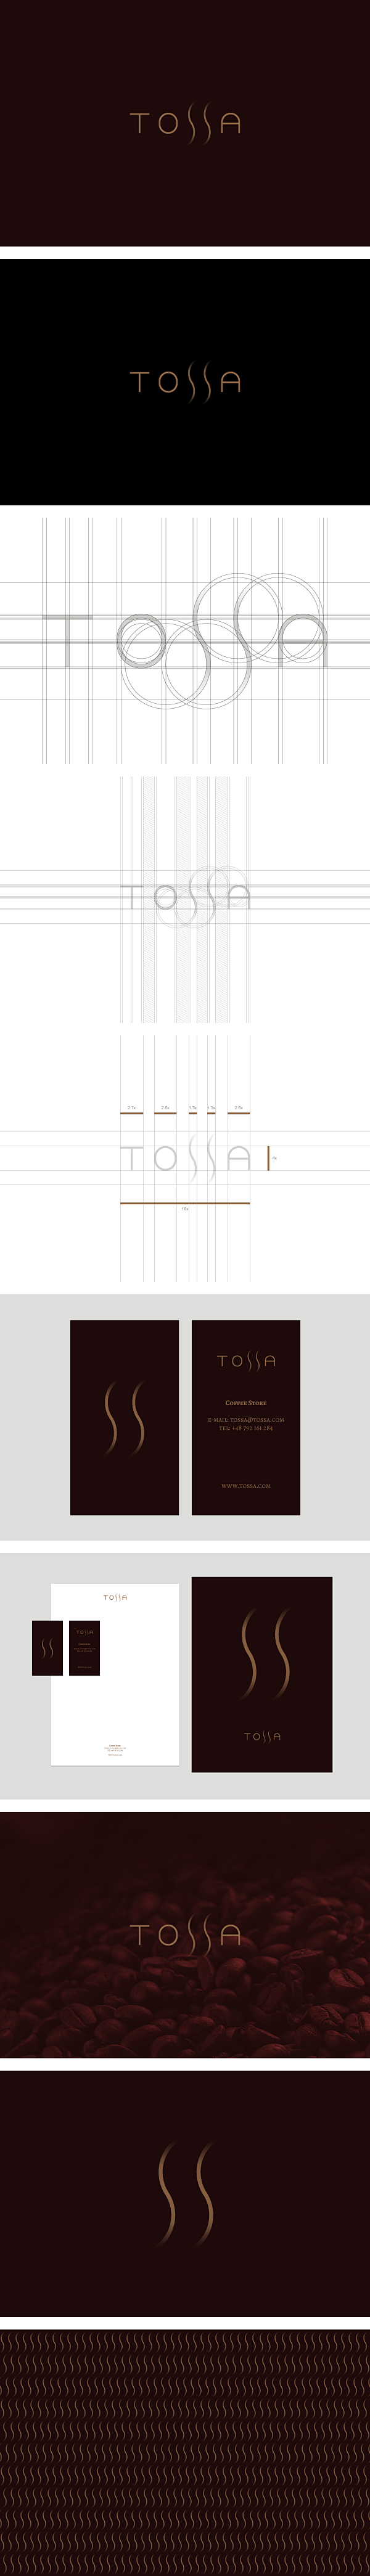 TOSSA咖啡品牌形象设计//Victo...